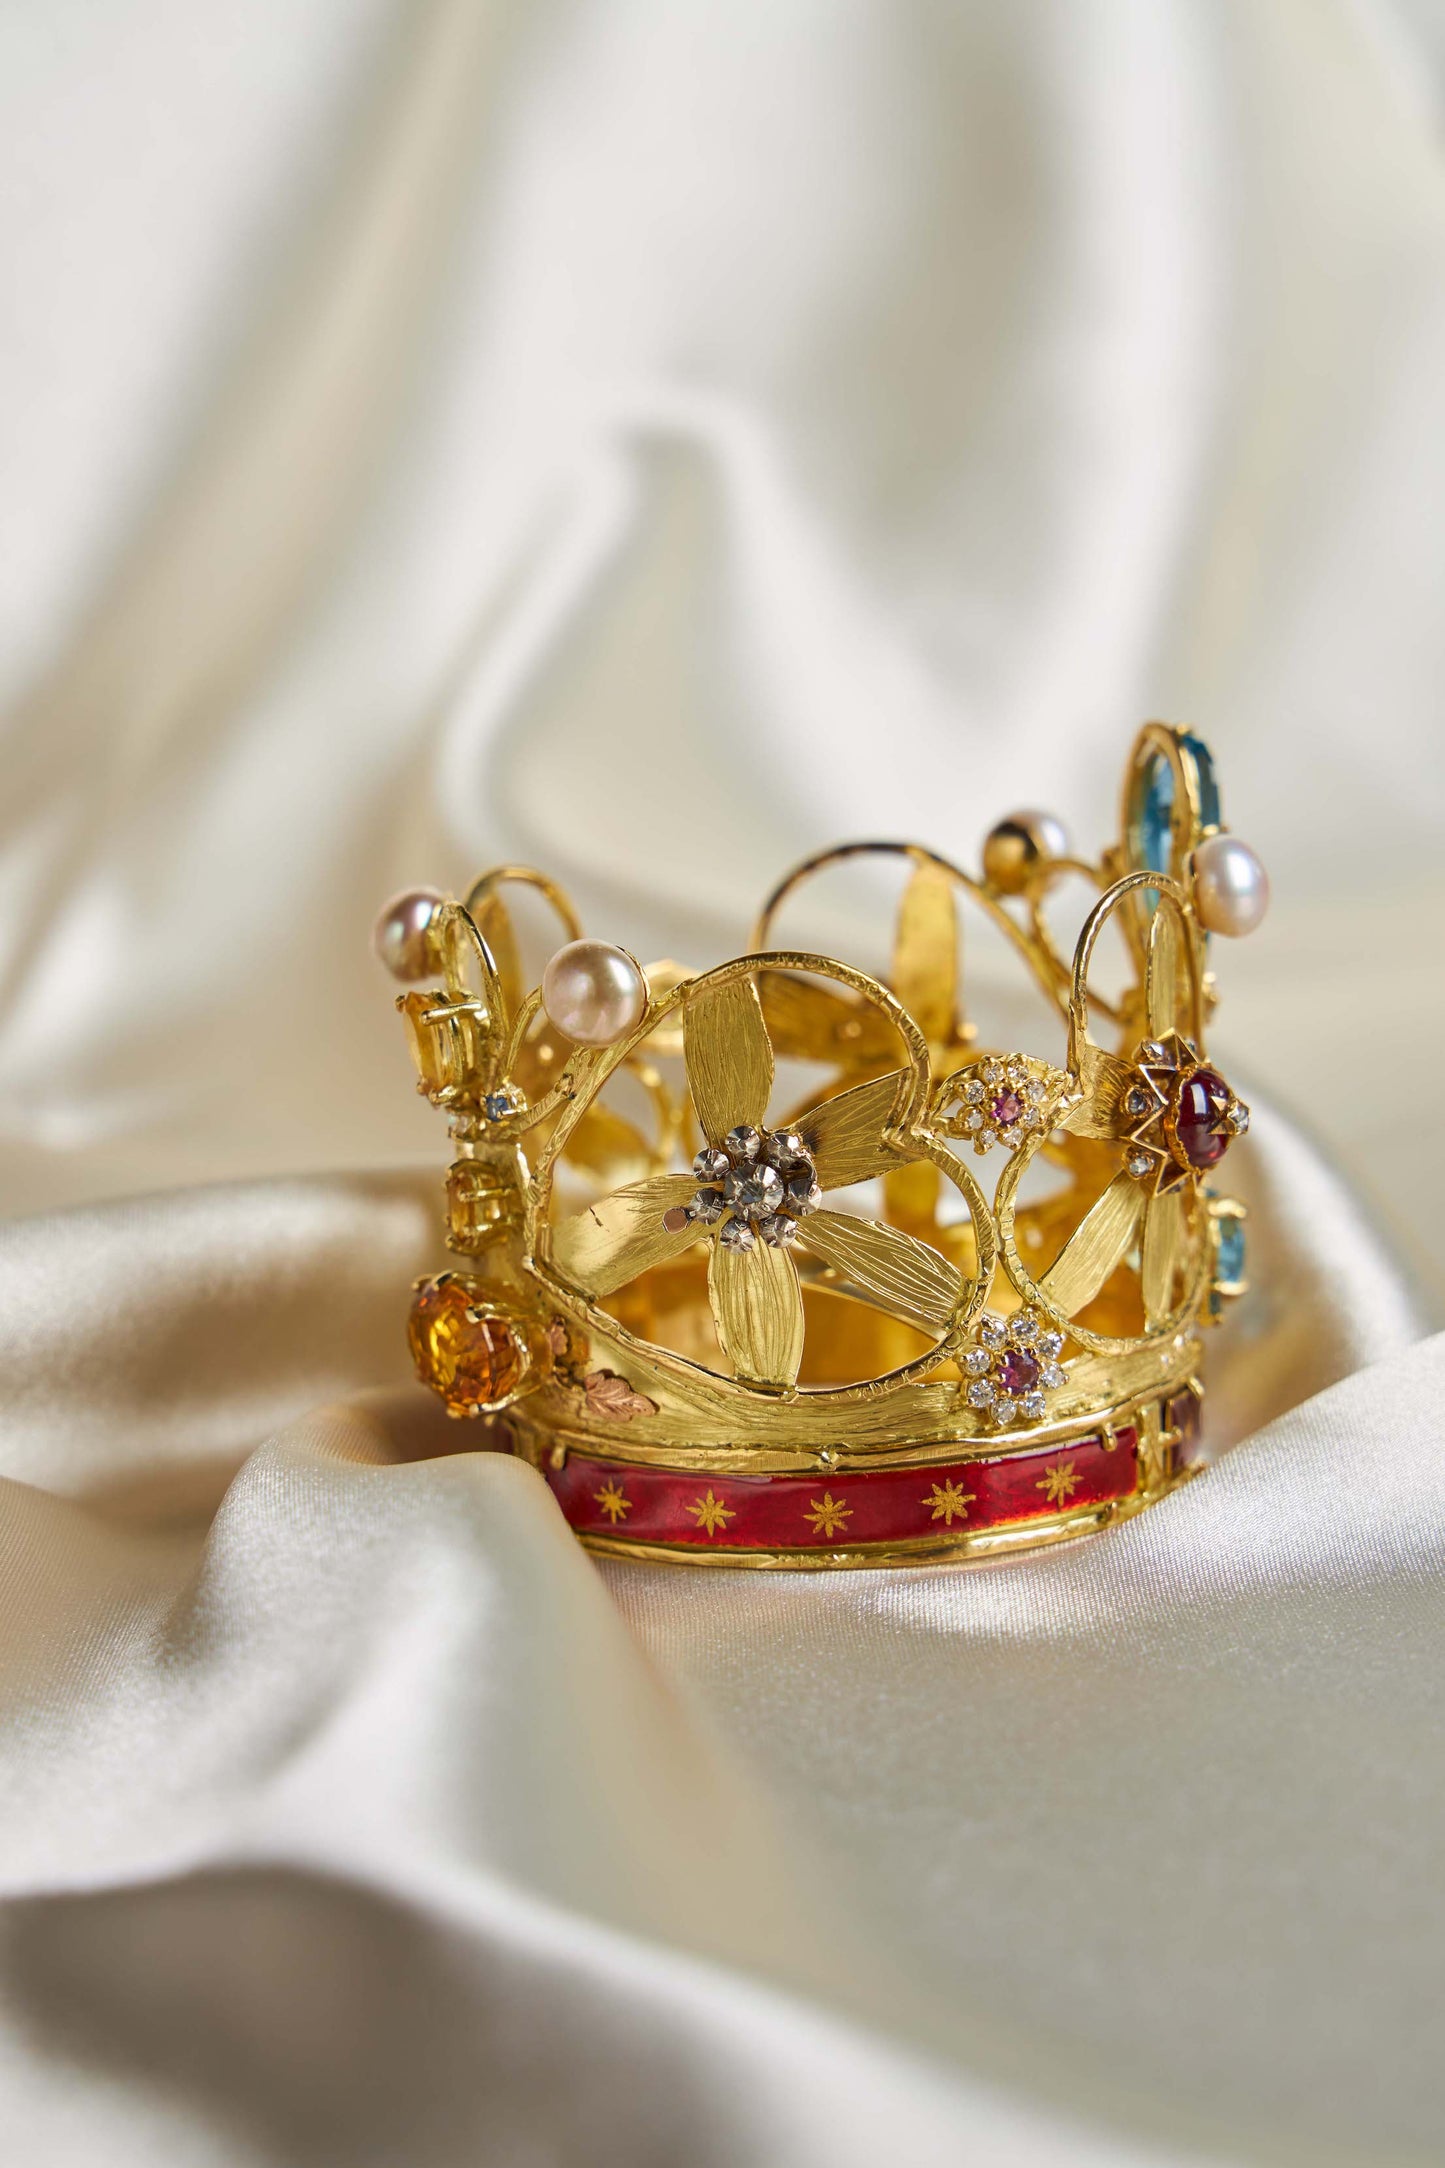 Kroon voor Maria van Scherpenheuvel.